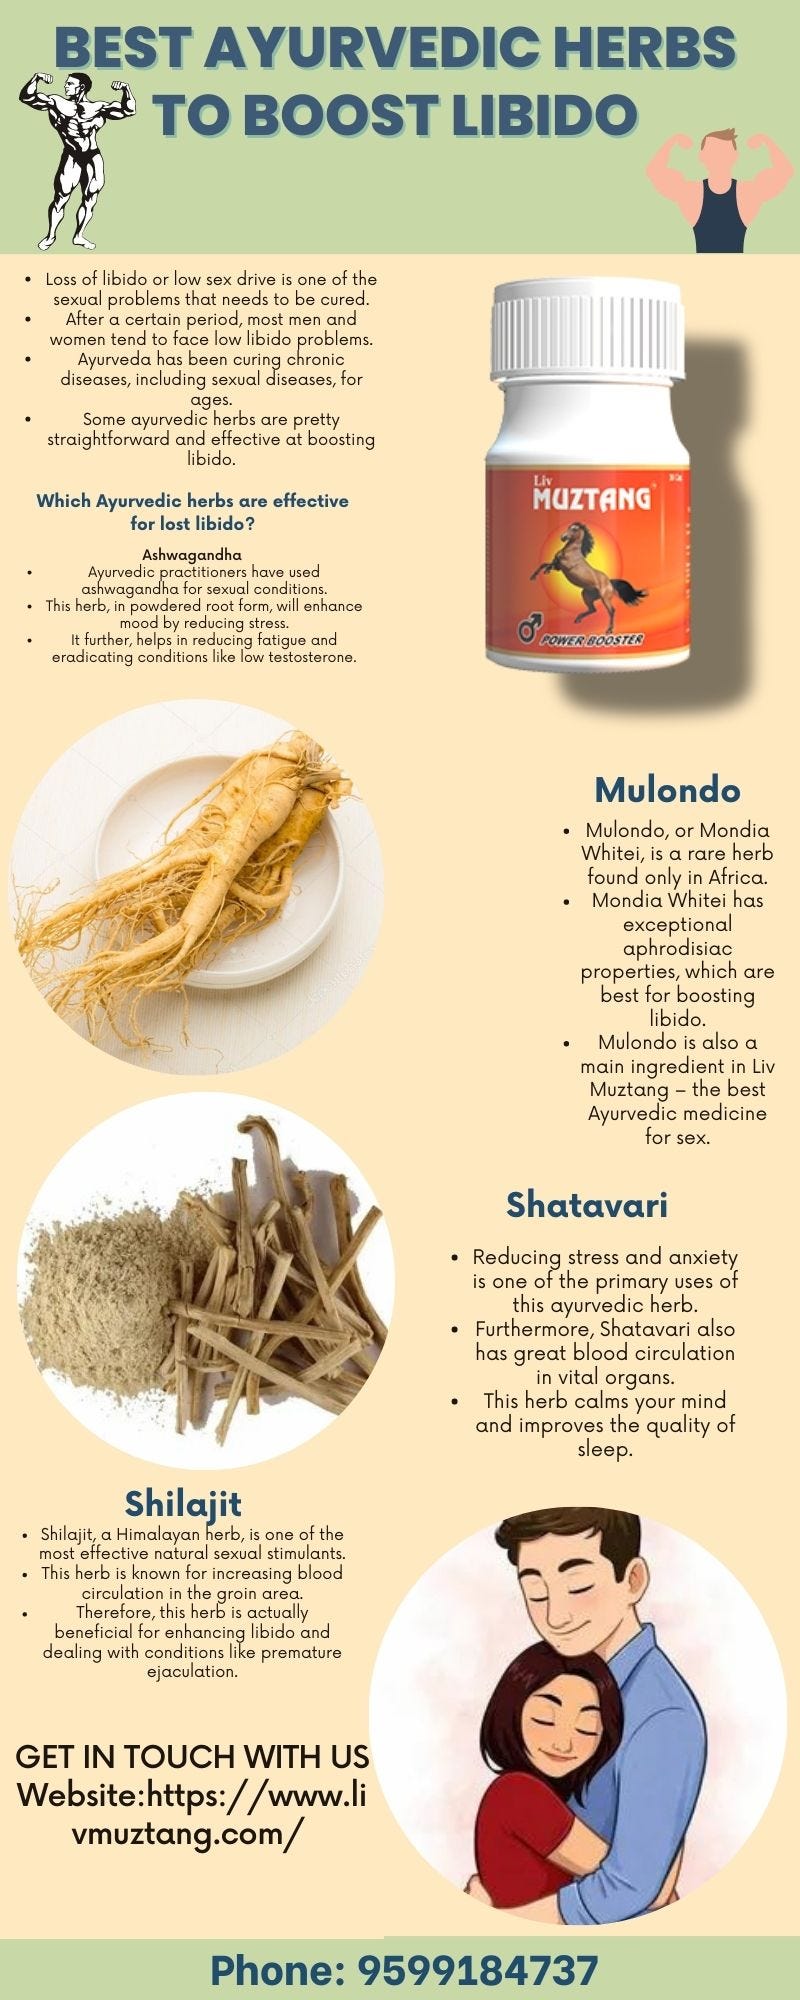 Best ayurvedic herbs to boost libido - viky kaushal - Medium